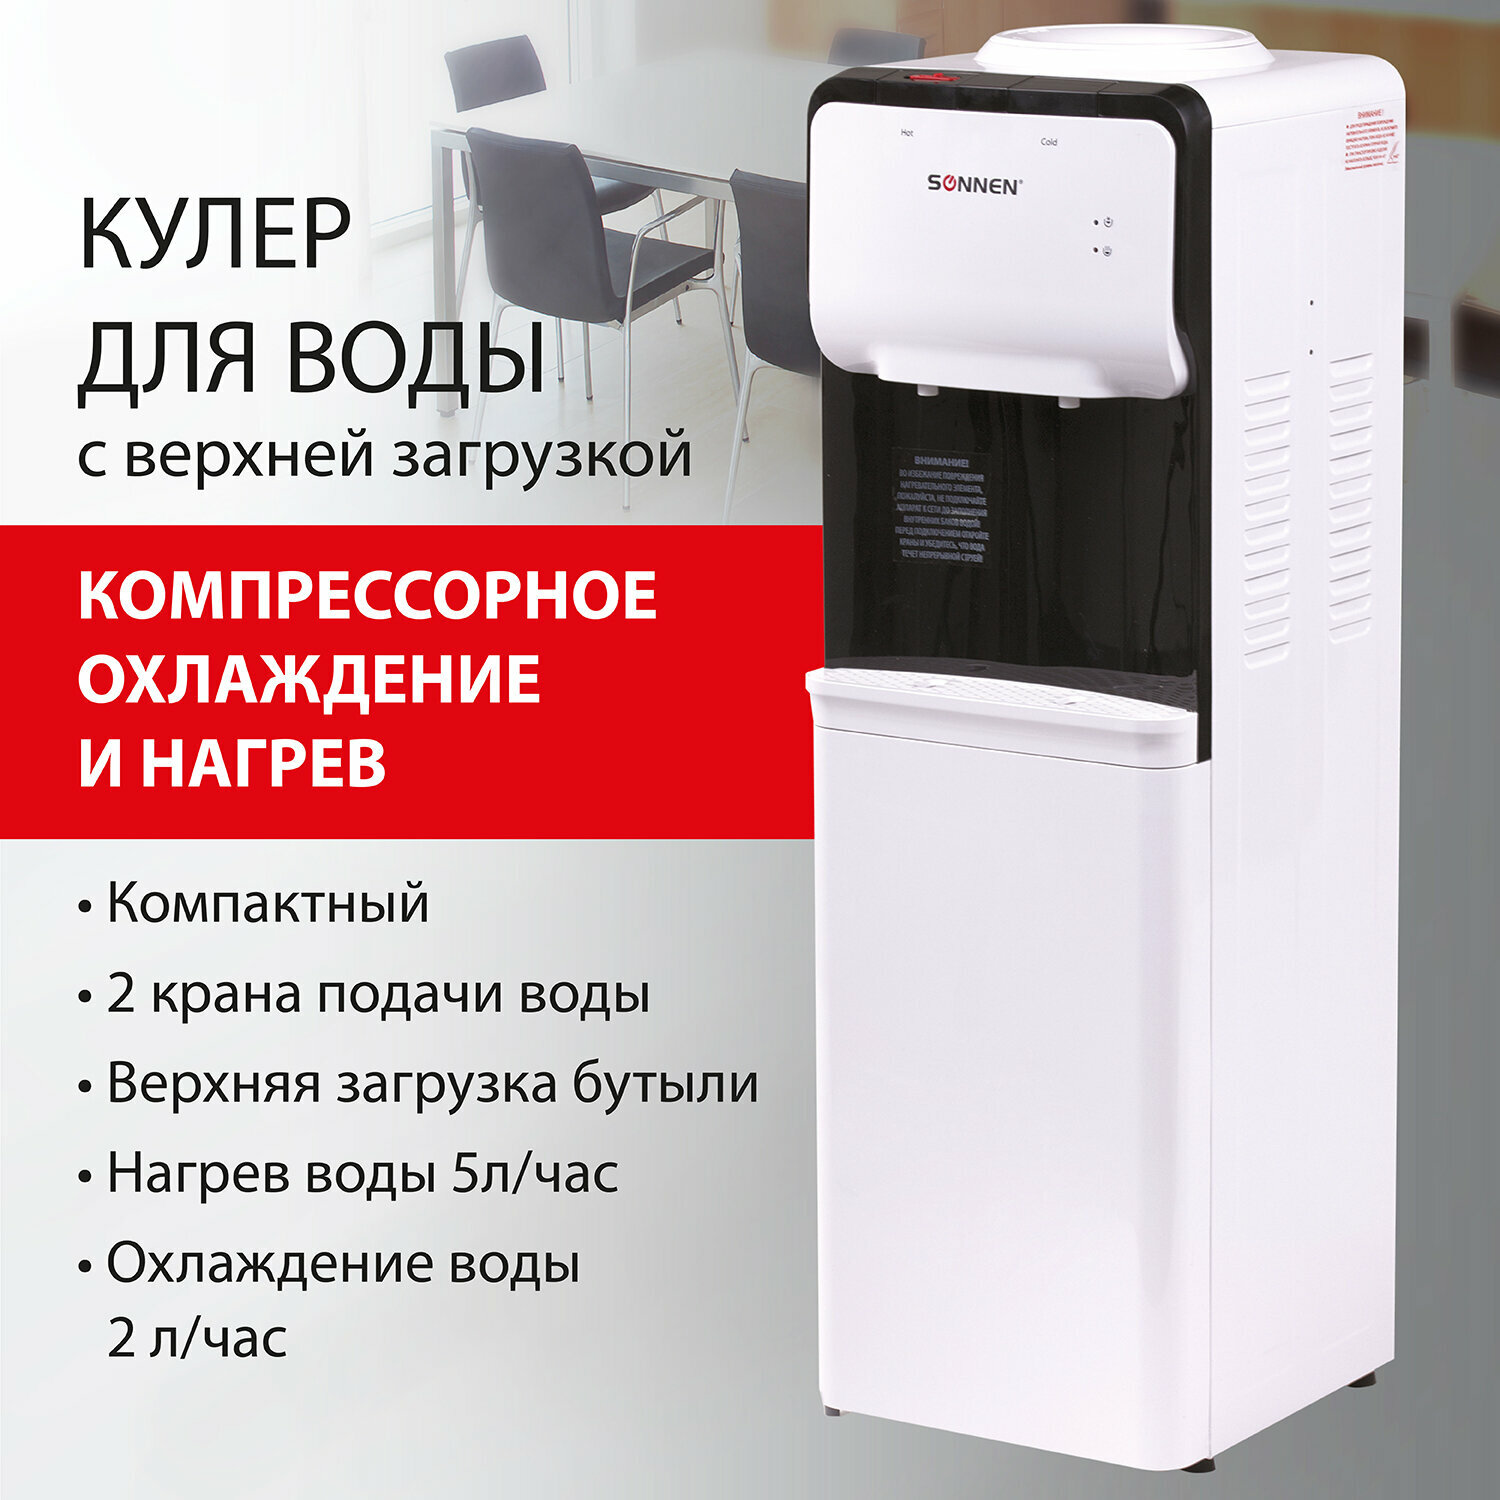 Кулер для воды напольный для дома / офиса, нагрев / охлаждение компрессорное, Sonnen Fsc-02s, 2 крана, серый, 455415